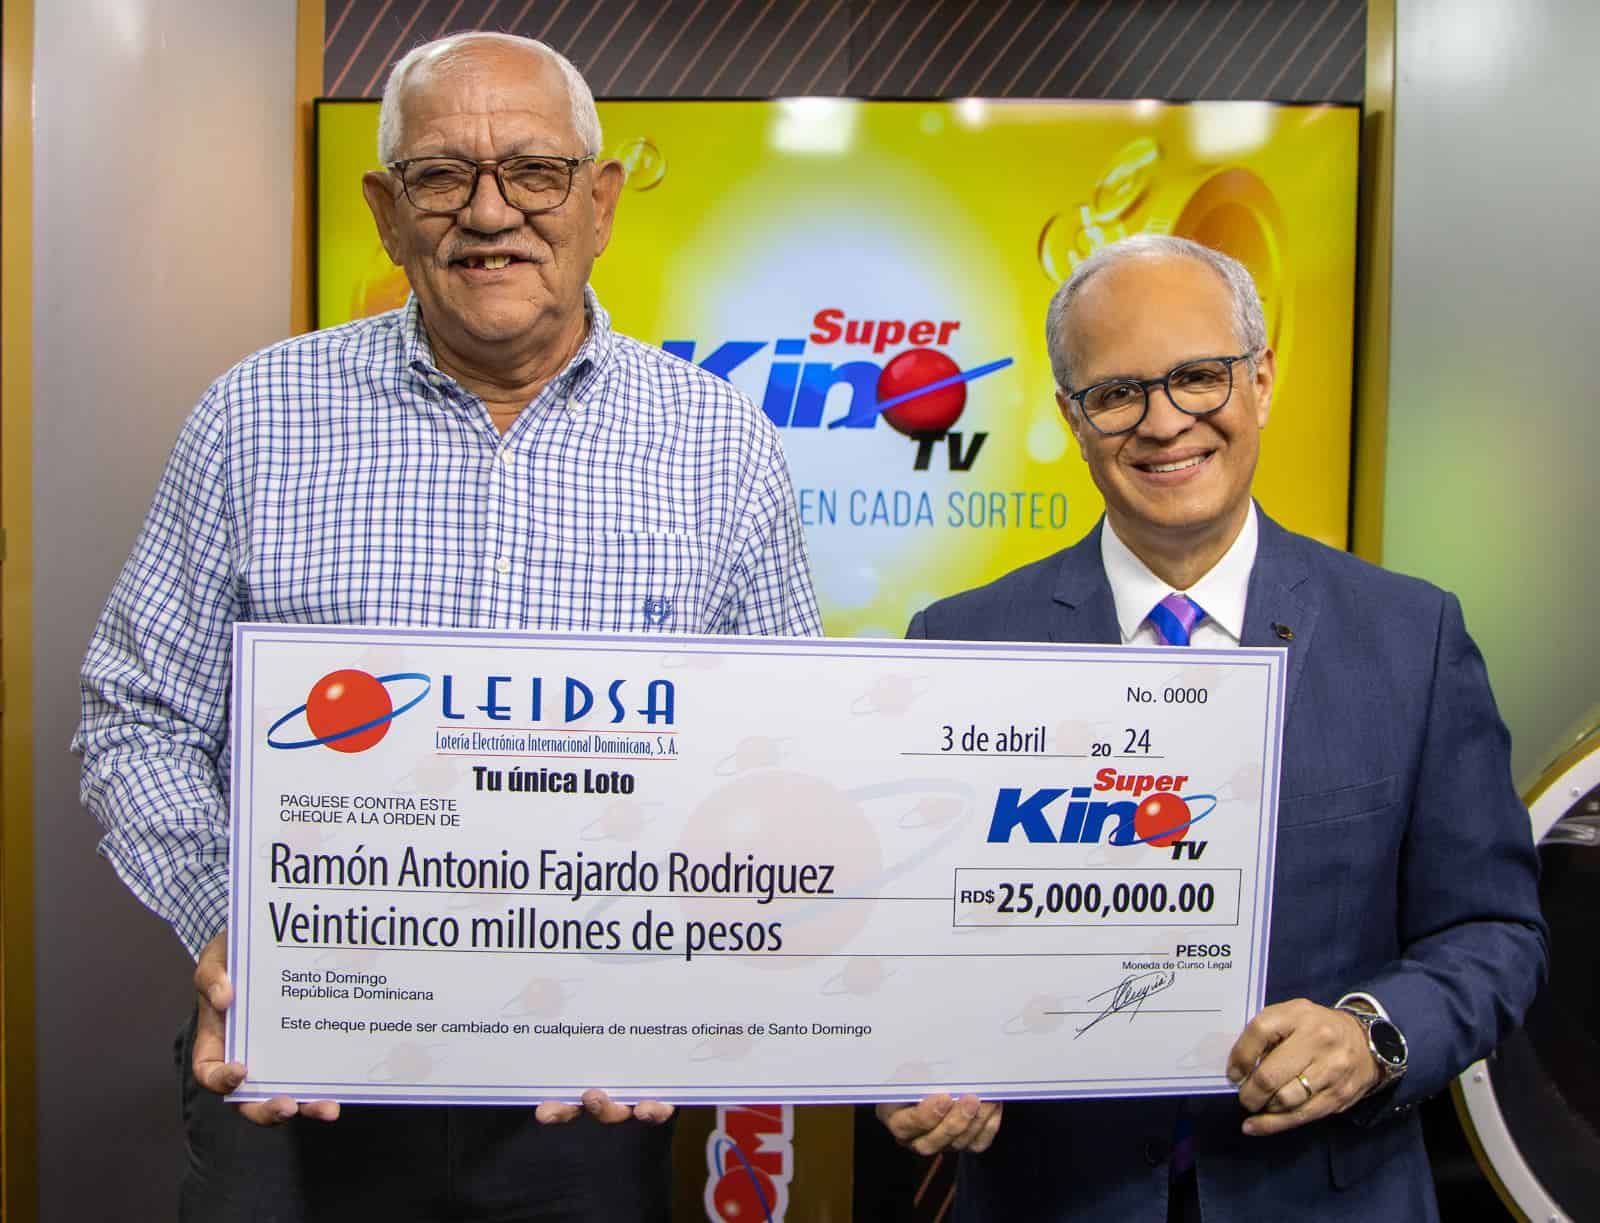 Leidsa regala 25 millones al maestro ganador del Súper Kino TV